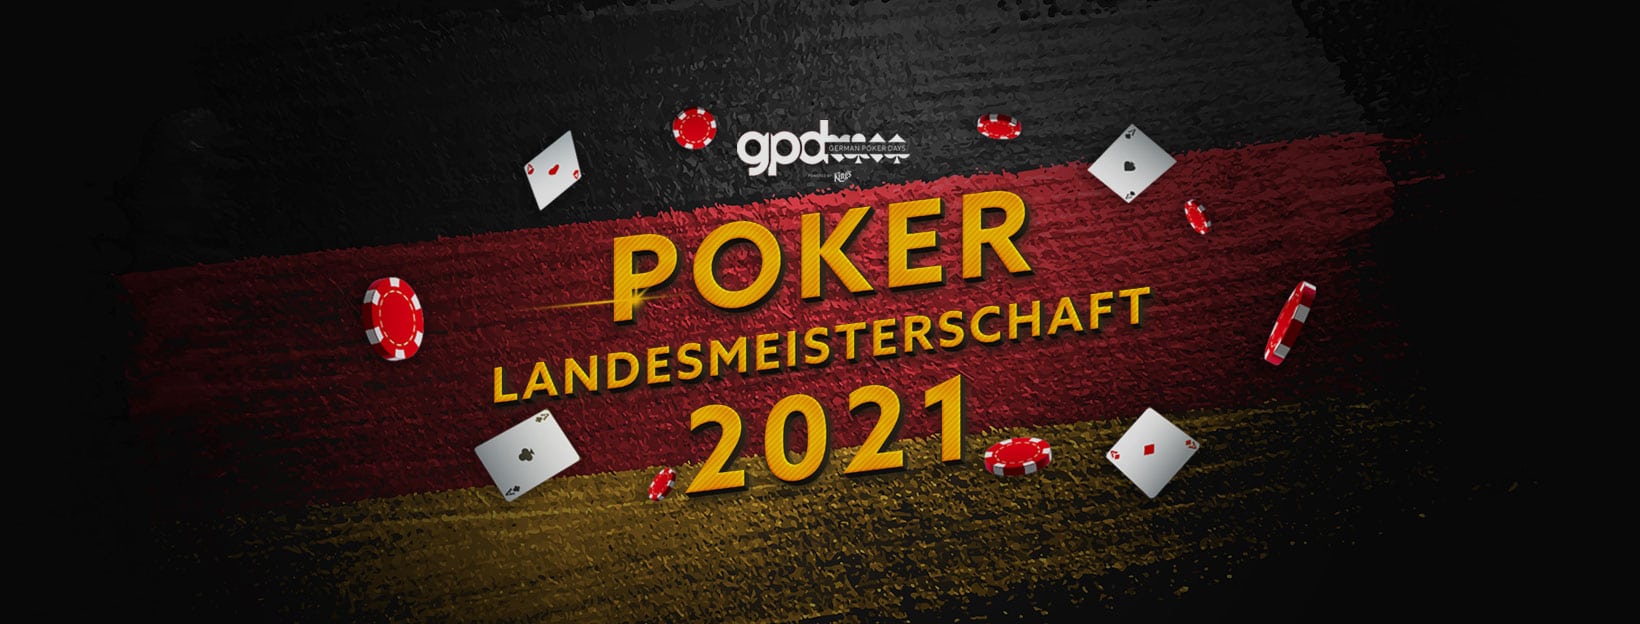 Poker Landesmeisterschaft 2021 Brandenburg